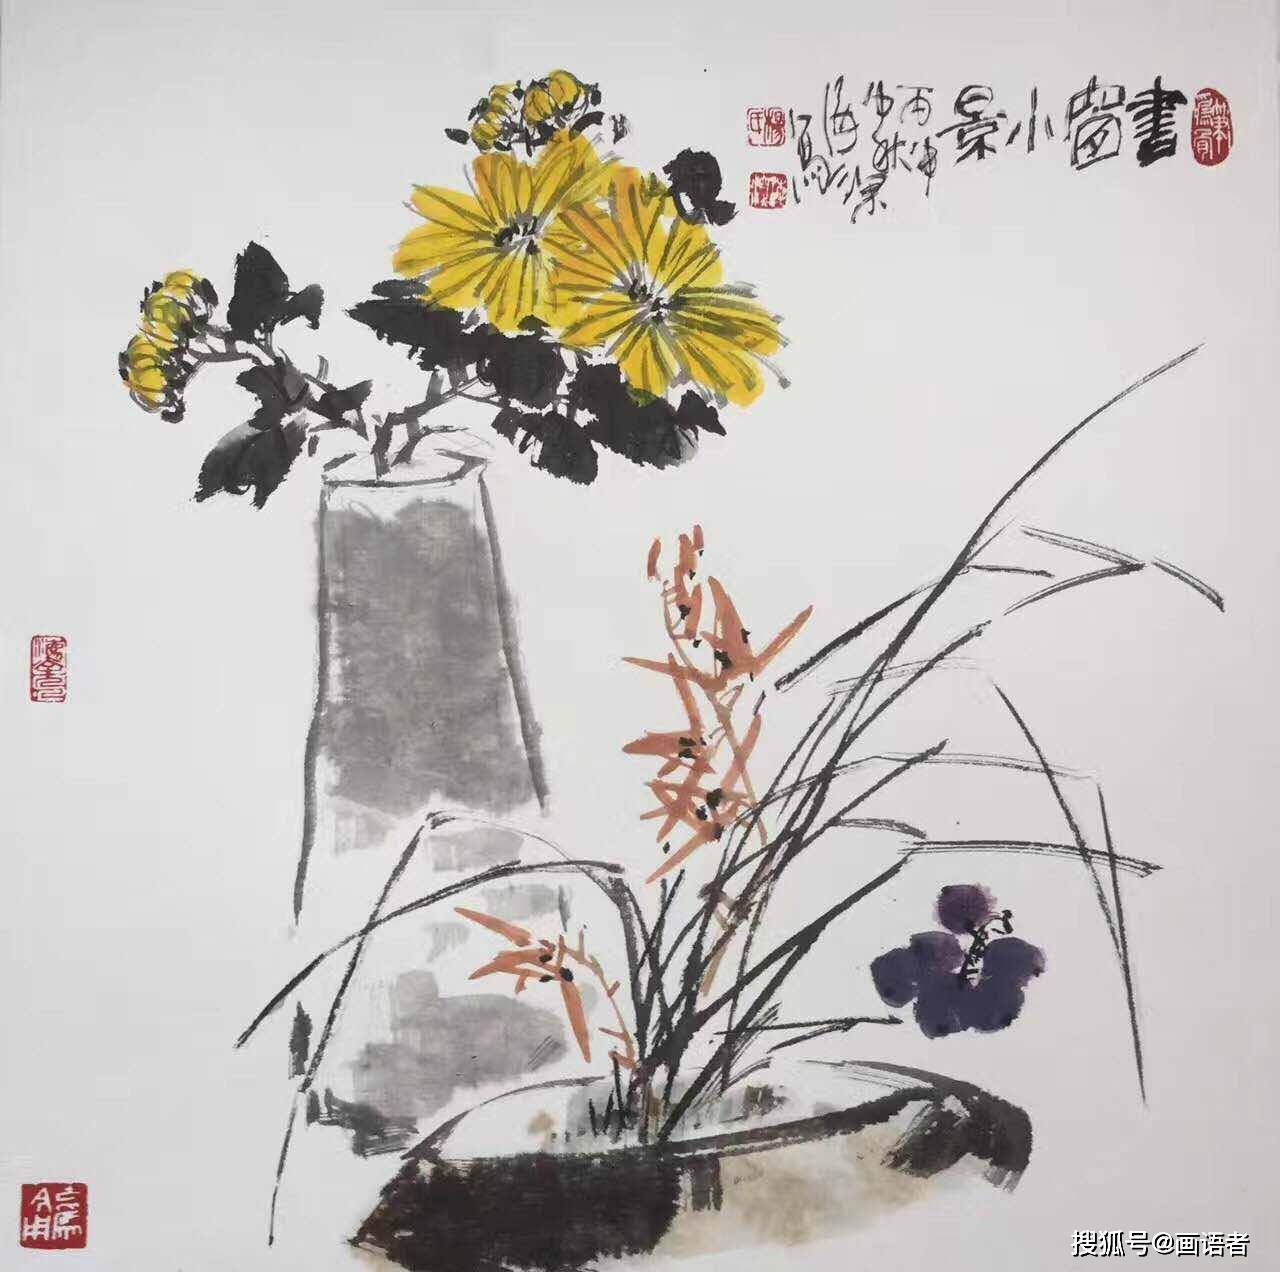 张羽  在中国,梅兰竹菊被誉为花中四君子,兰花的幽静与君子之风相契合